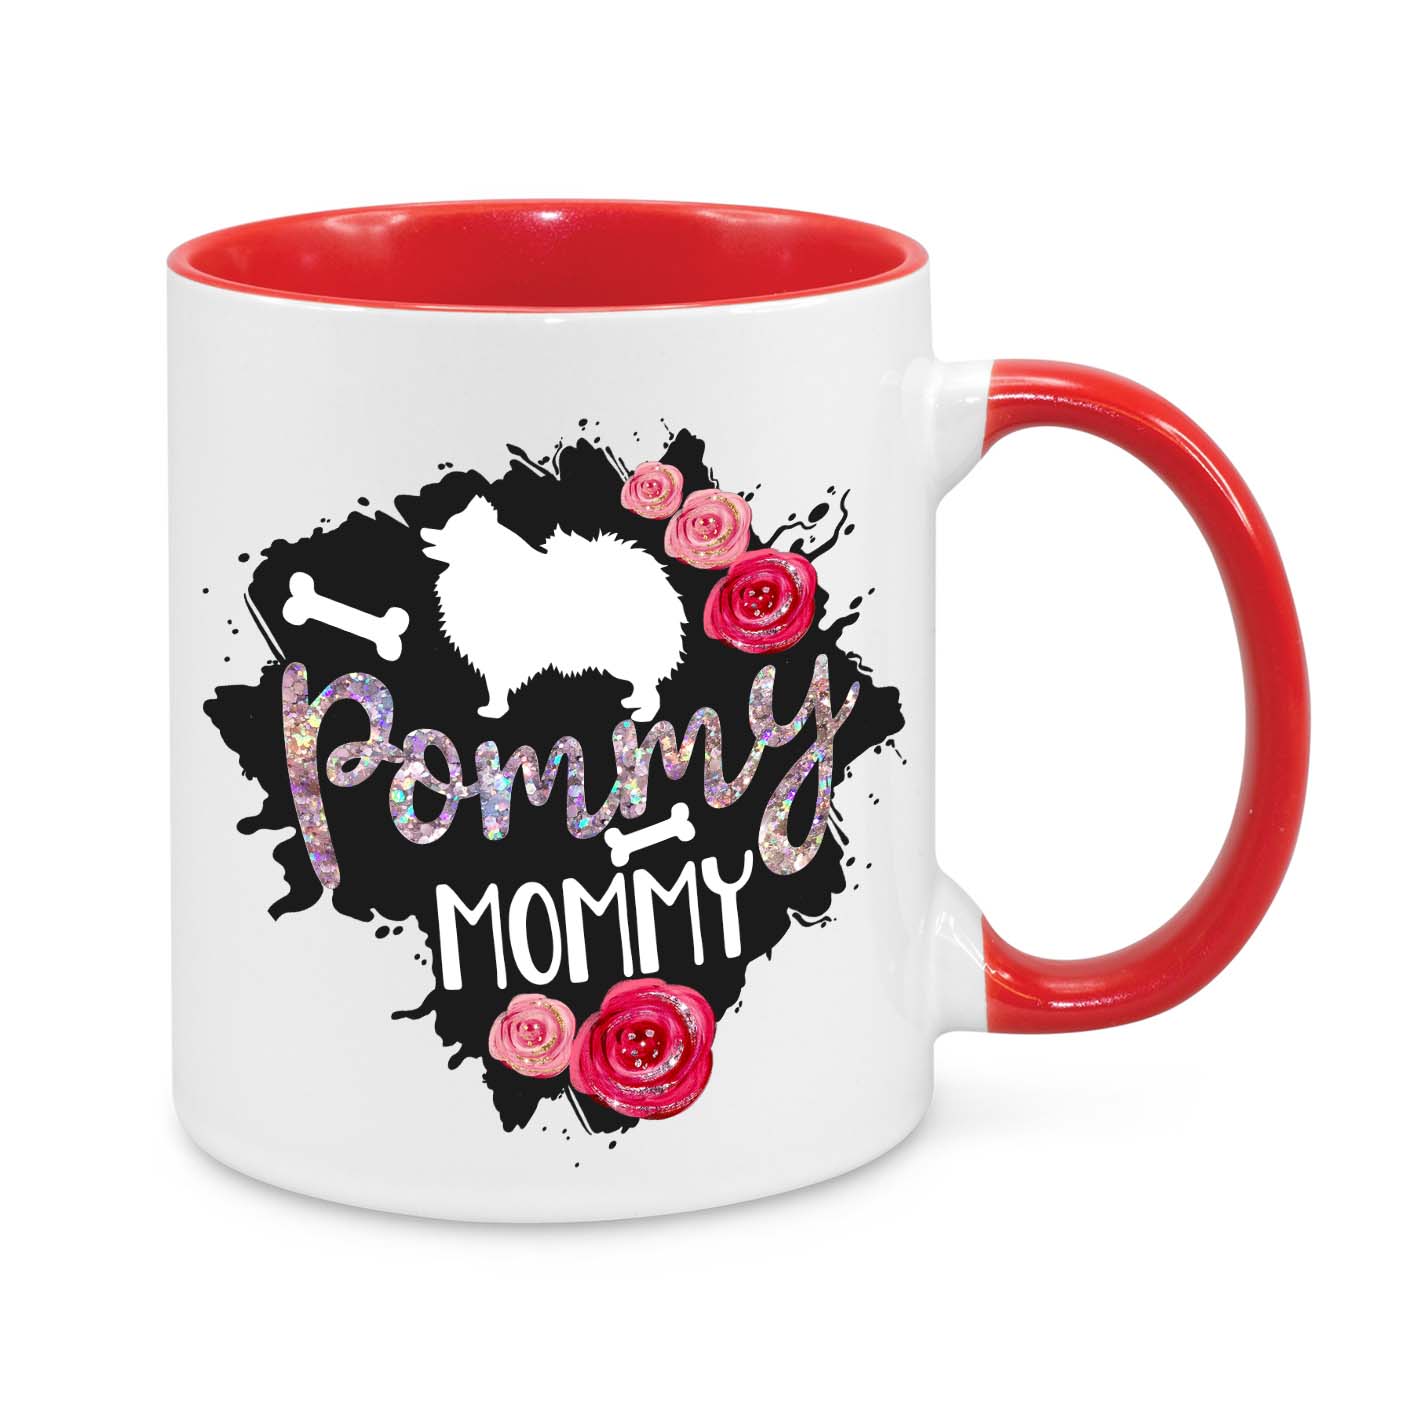 Pommy Mommy Novelty Mug